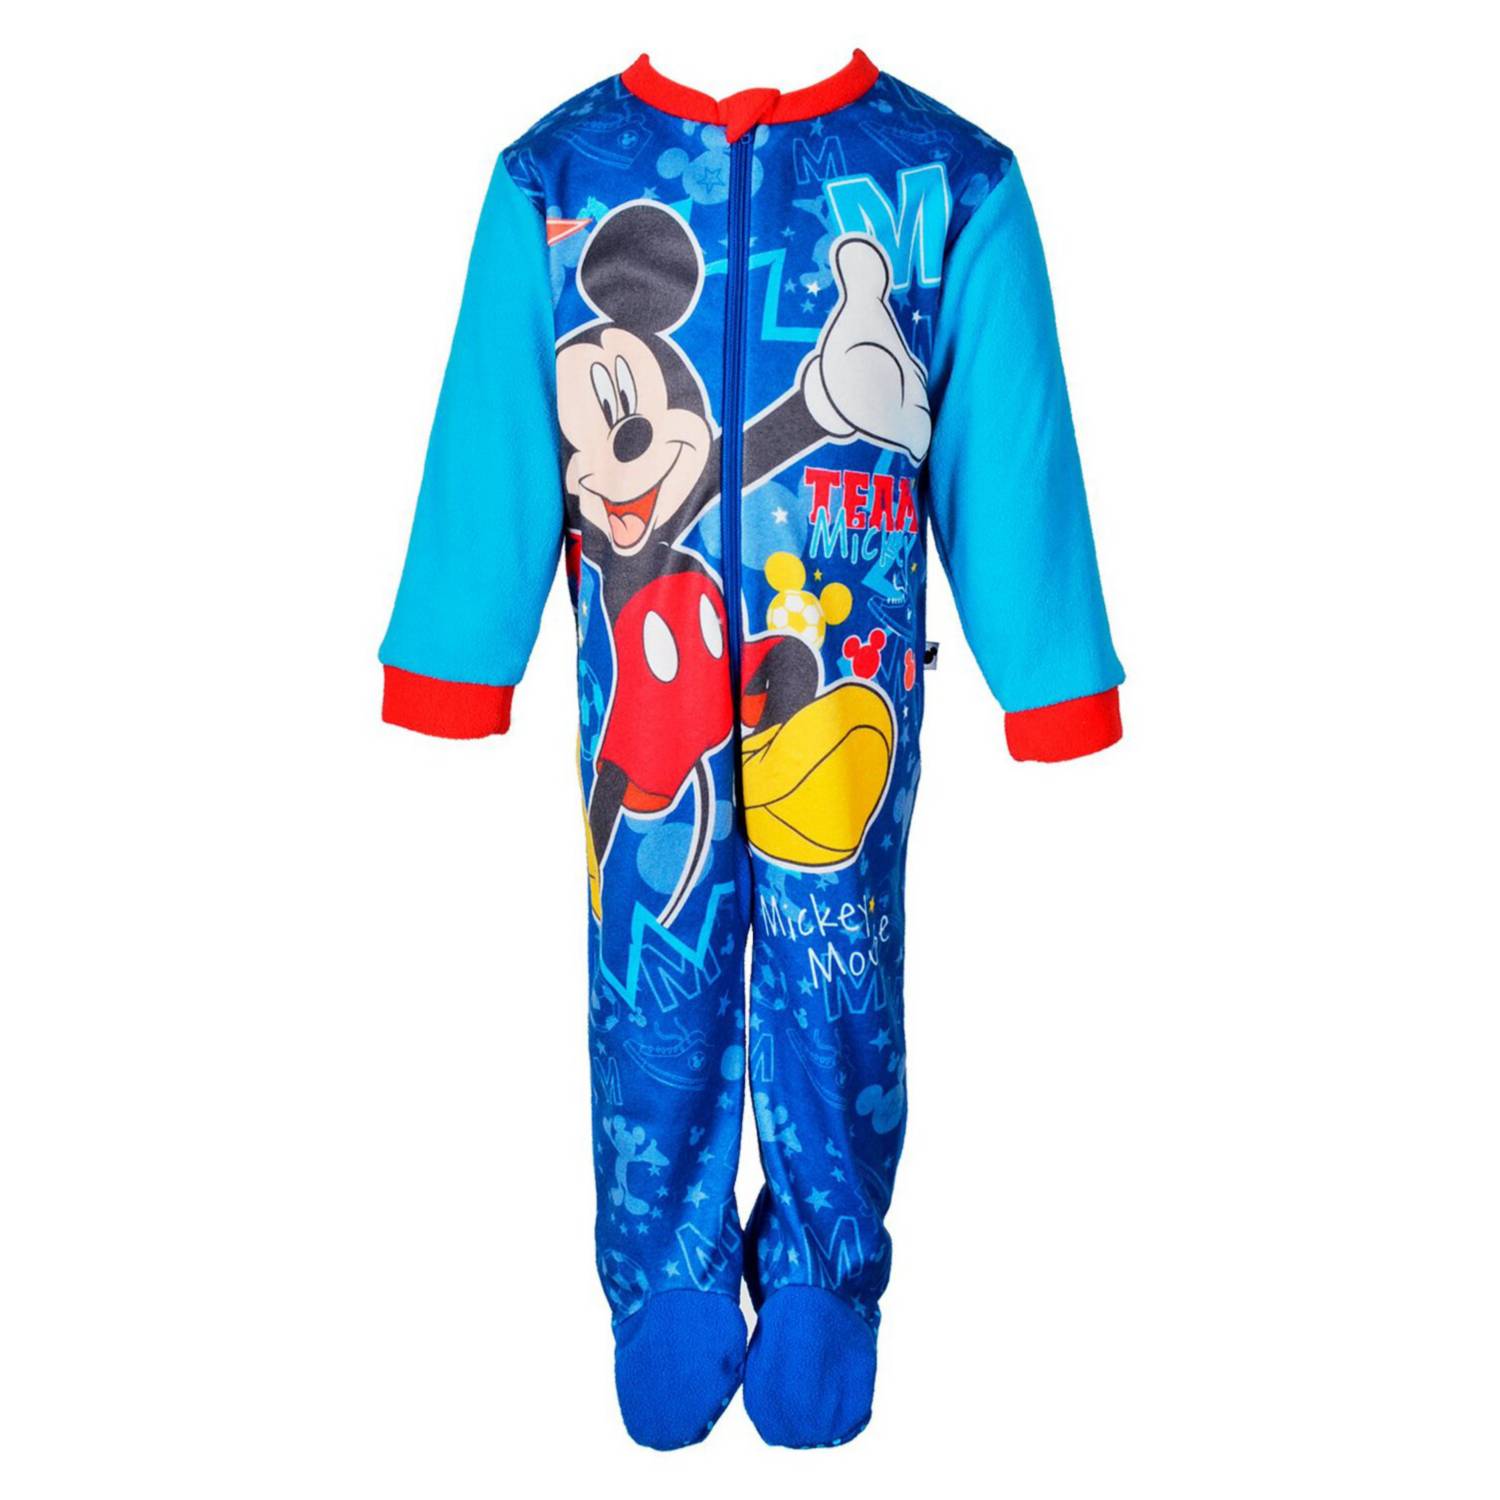 Disney Mickey Mouse Pijama Niño de Una Pieza Pijama Entero con Capucha y Cola 3D Regalos para Niños y Adolescentes 2-14 Años Pijamas Niños de Forro Polar 